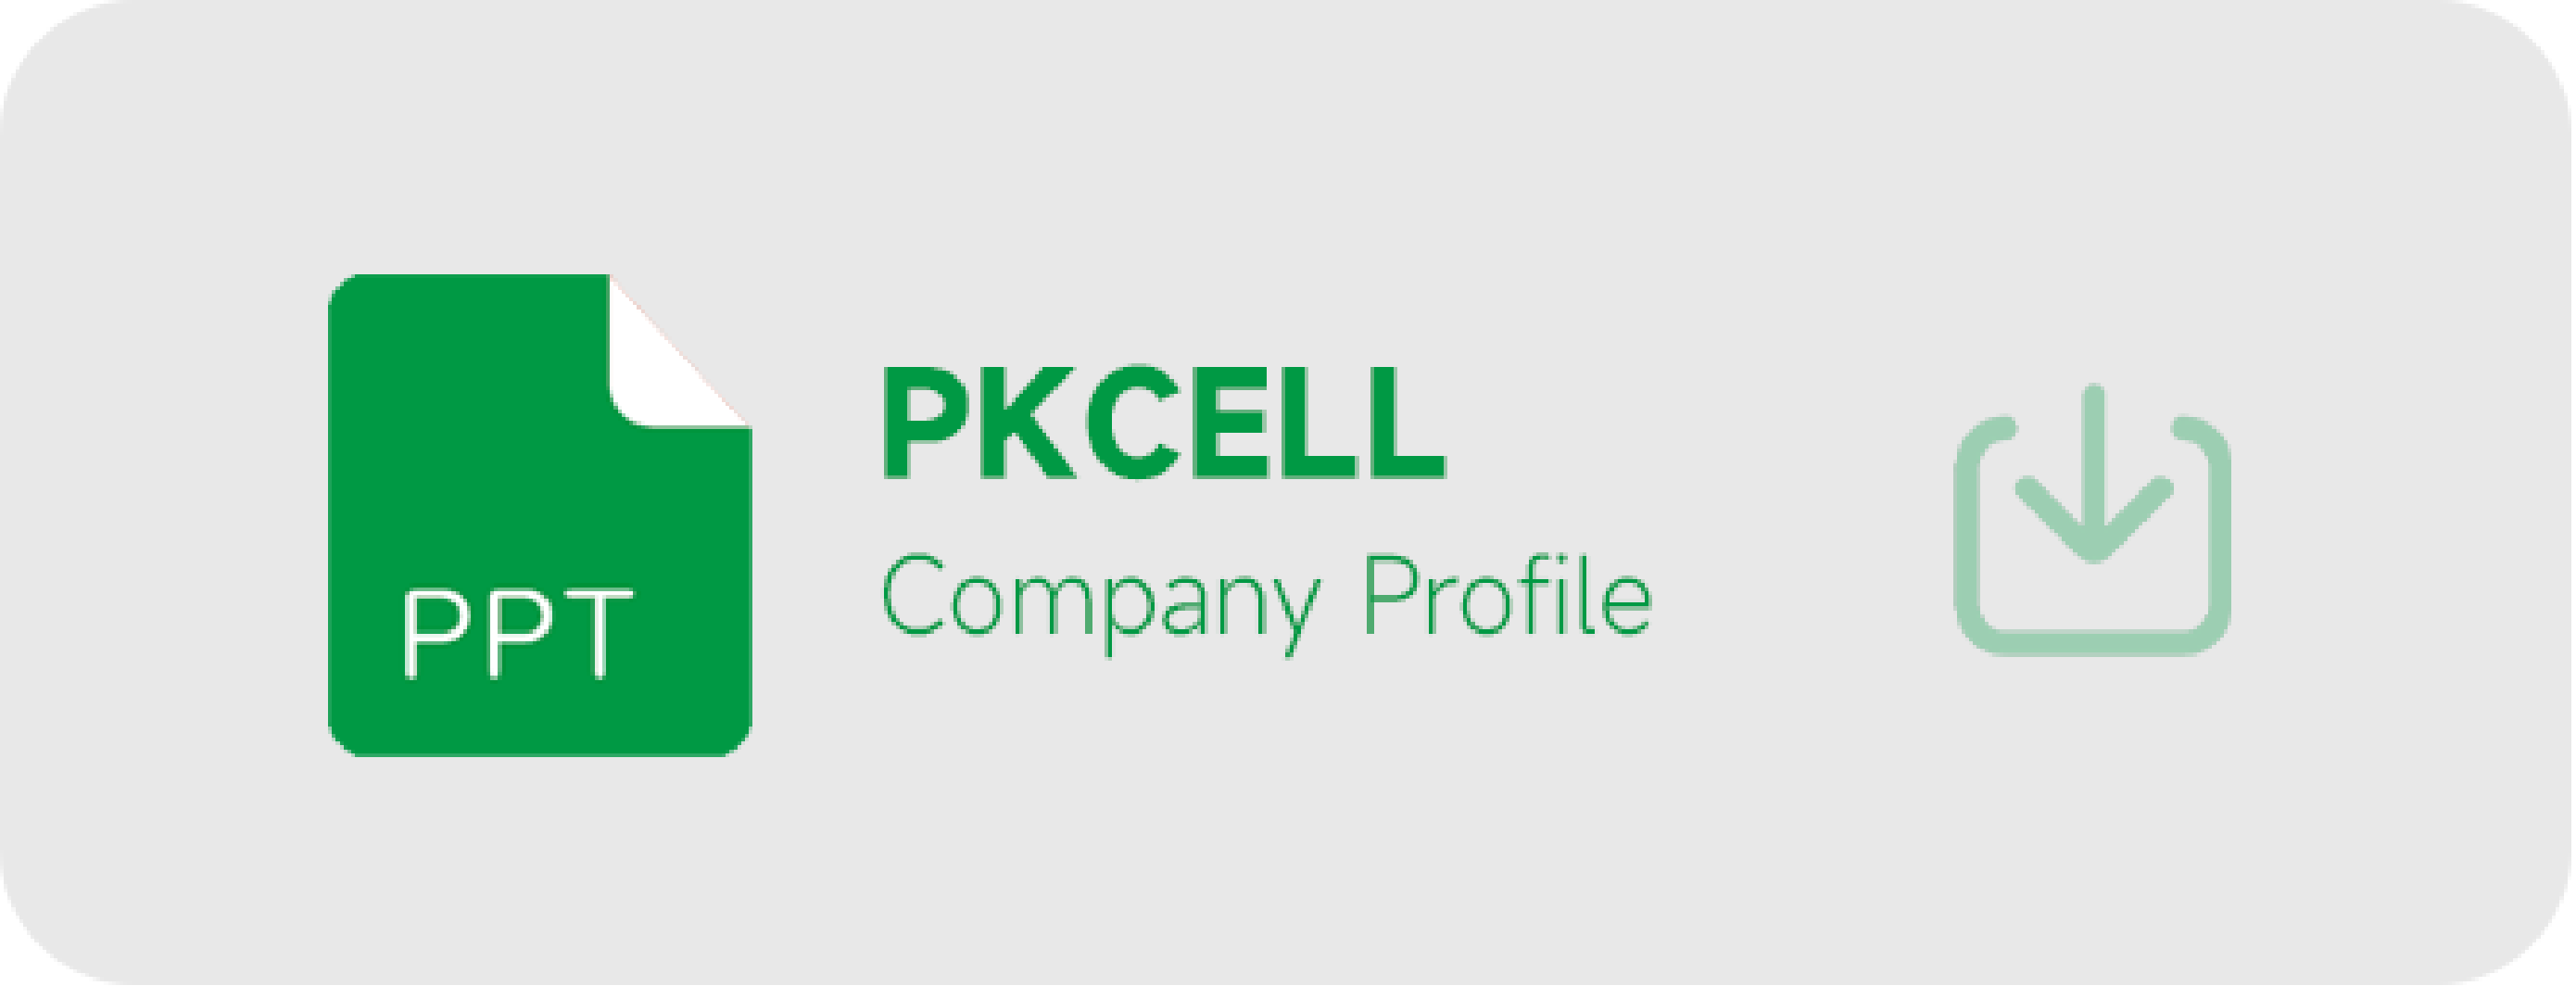 perfil de empresa pkcell